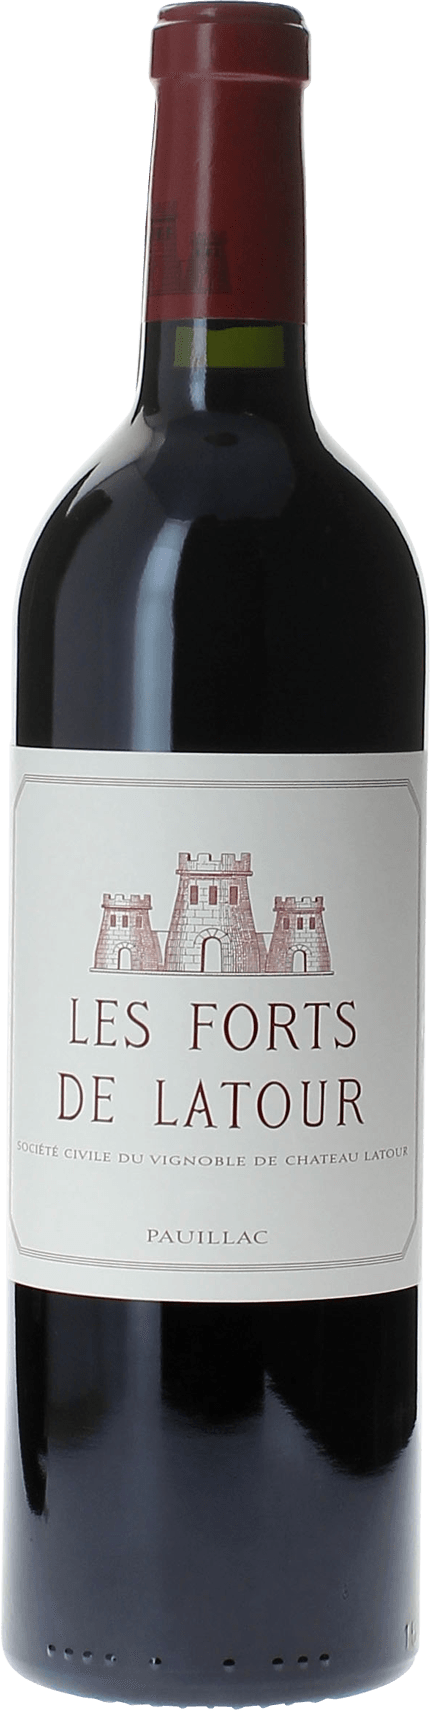 Les forts de latour 1989 2me vin de LATOUR Pauillac, Bordeaux rouge